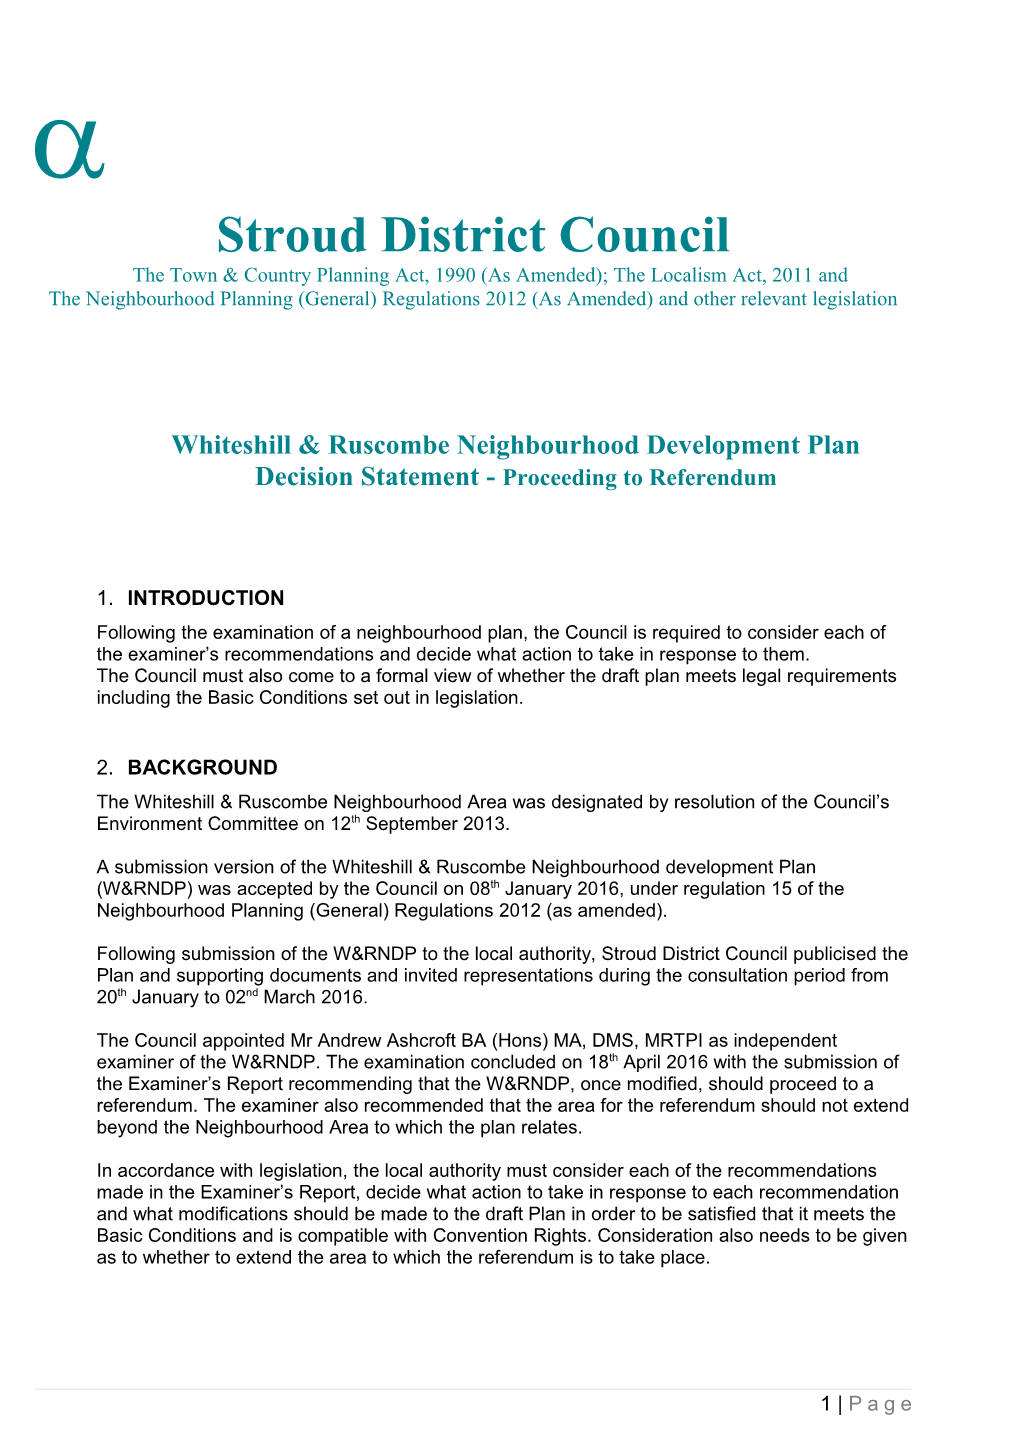 Whiteshill & Ruscombe Neighbourhood Development Plan